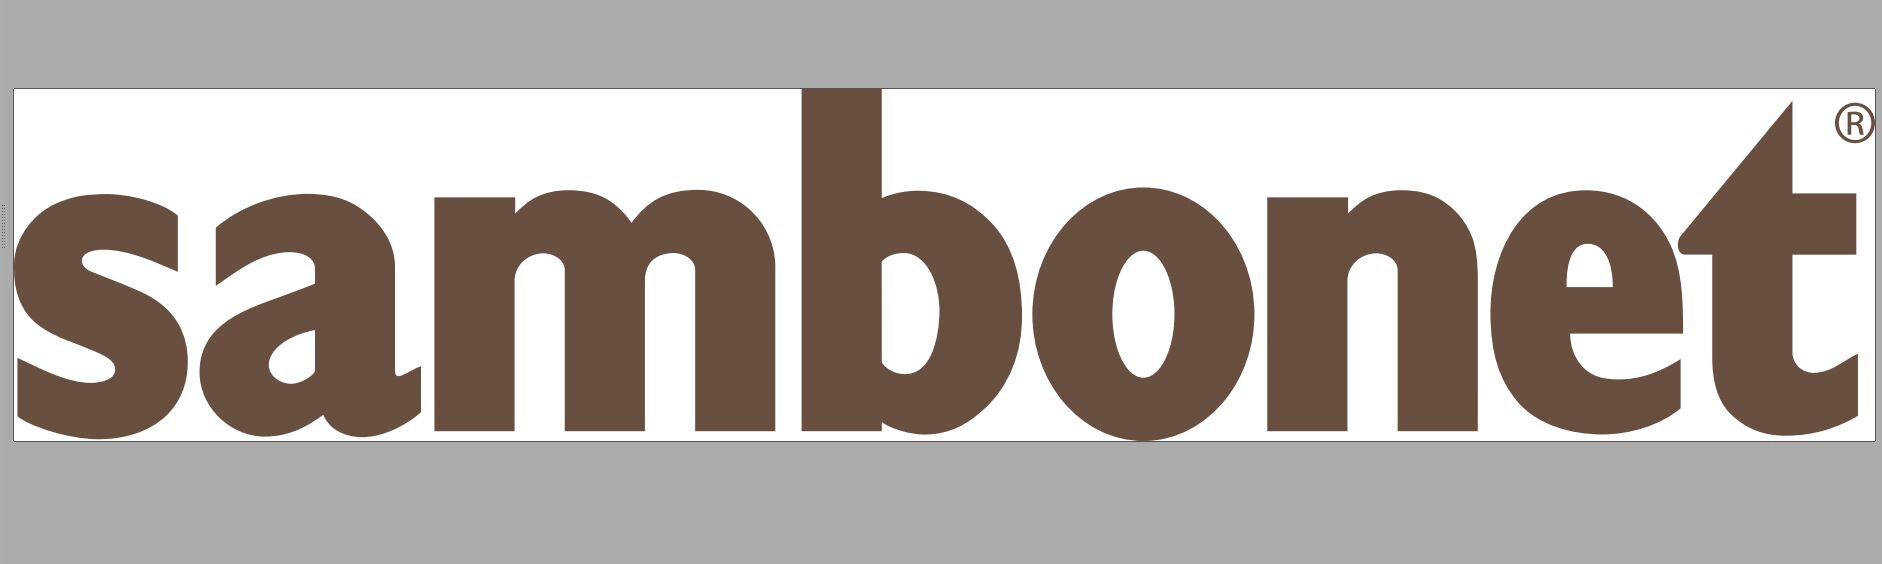 sambonet-logo